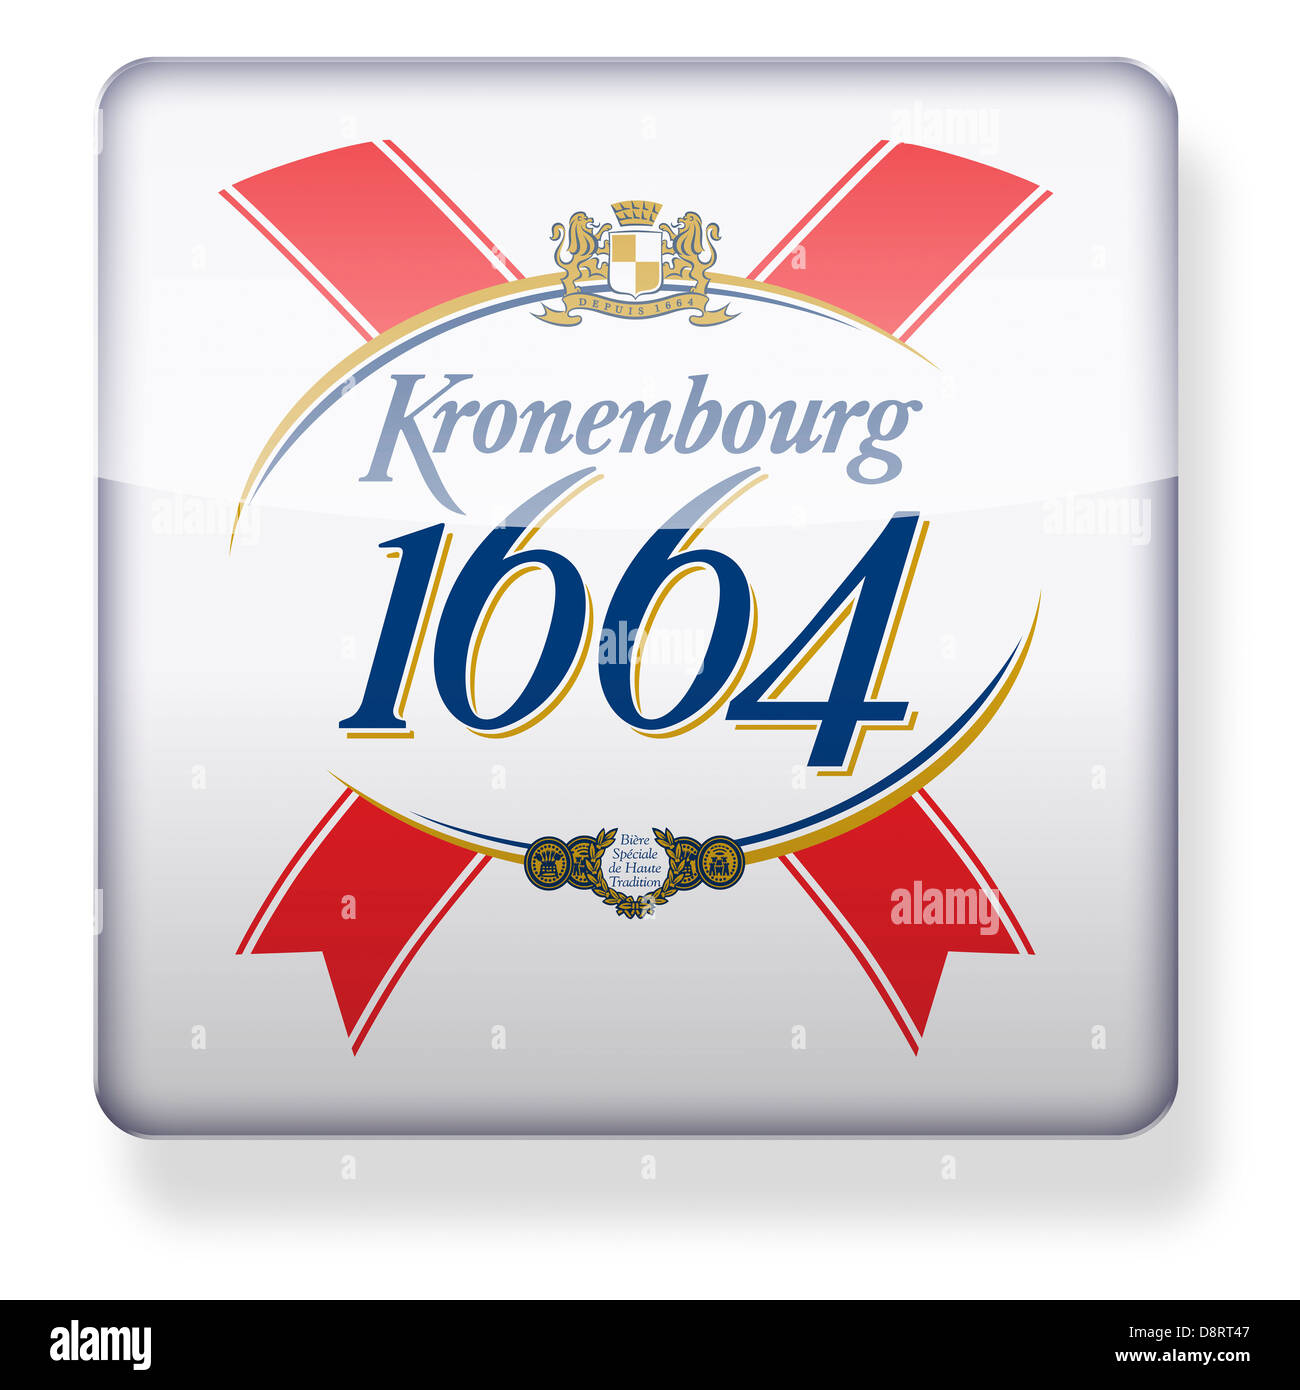 Kronenbourg 1664 ogo come l'icona di un'app. Percorso di clipping incluso. Foto Stock